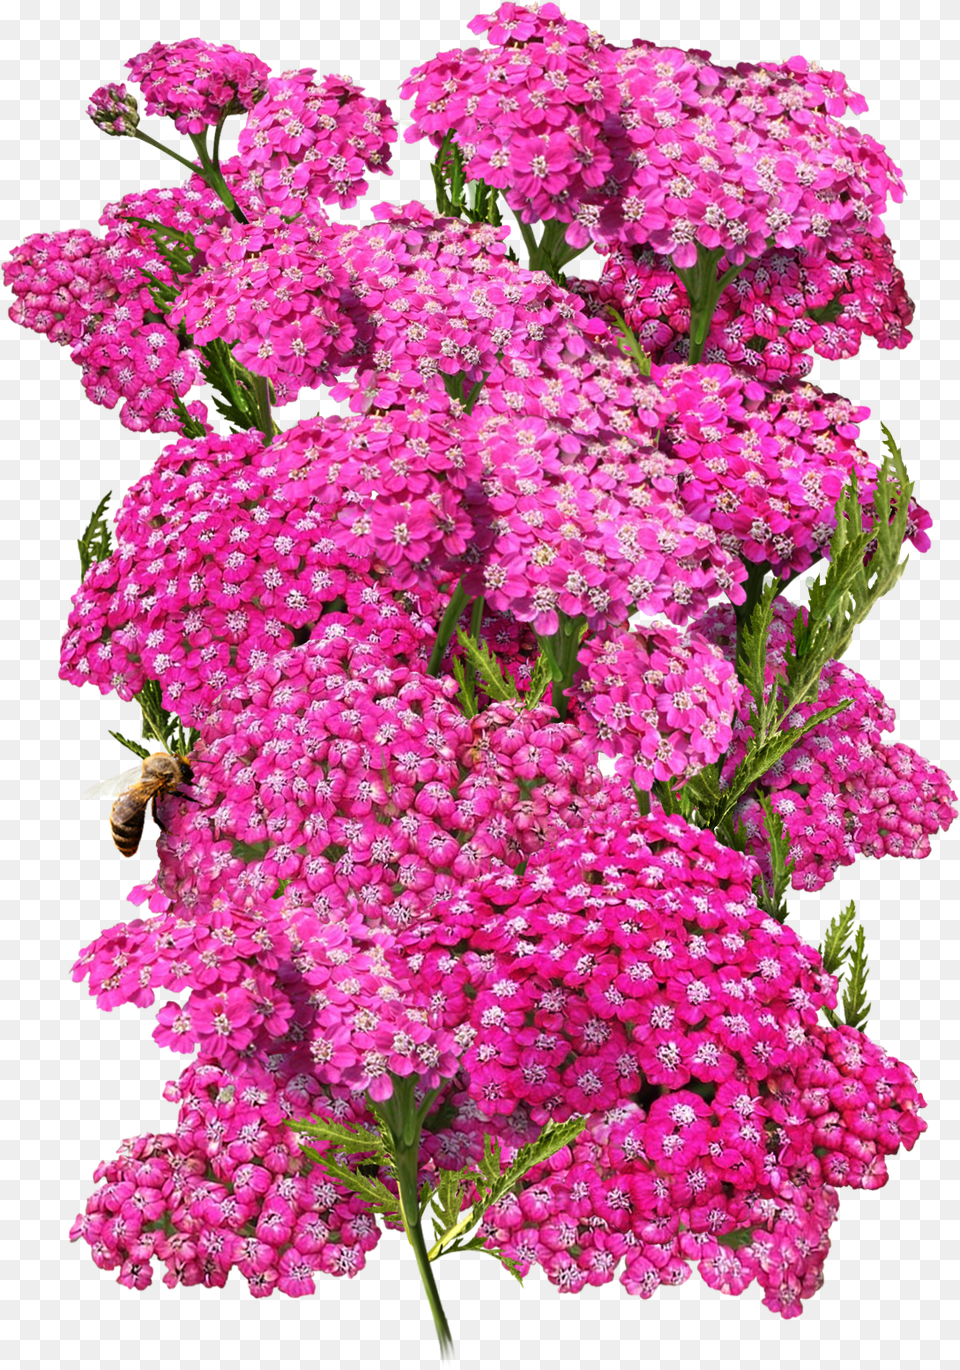 Cerise Queen Yarrow Seeds For Plantingclass Lazyload Lilac, Plant, Flower, Flower Arrangement, Flower Bouquet Free Png